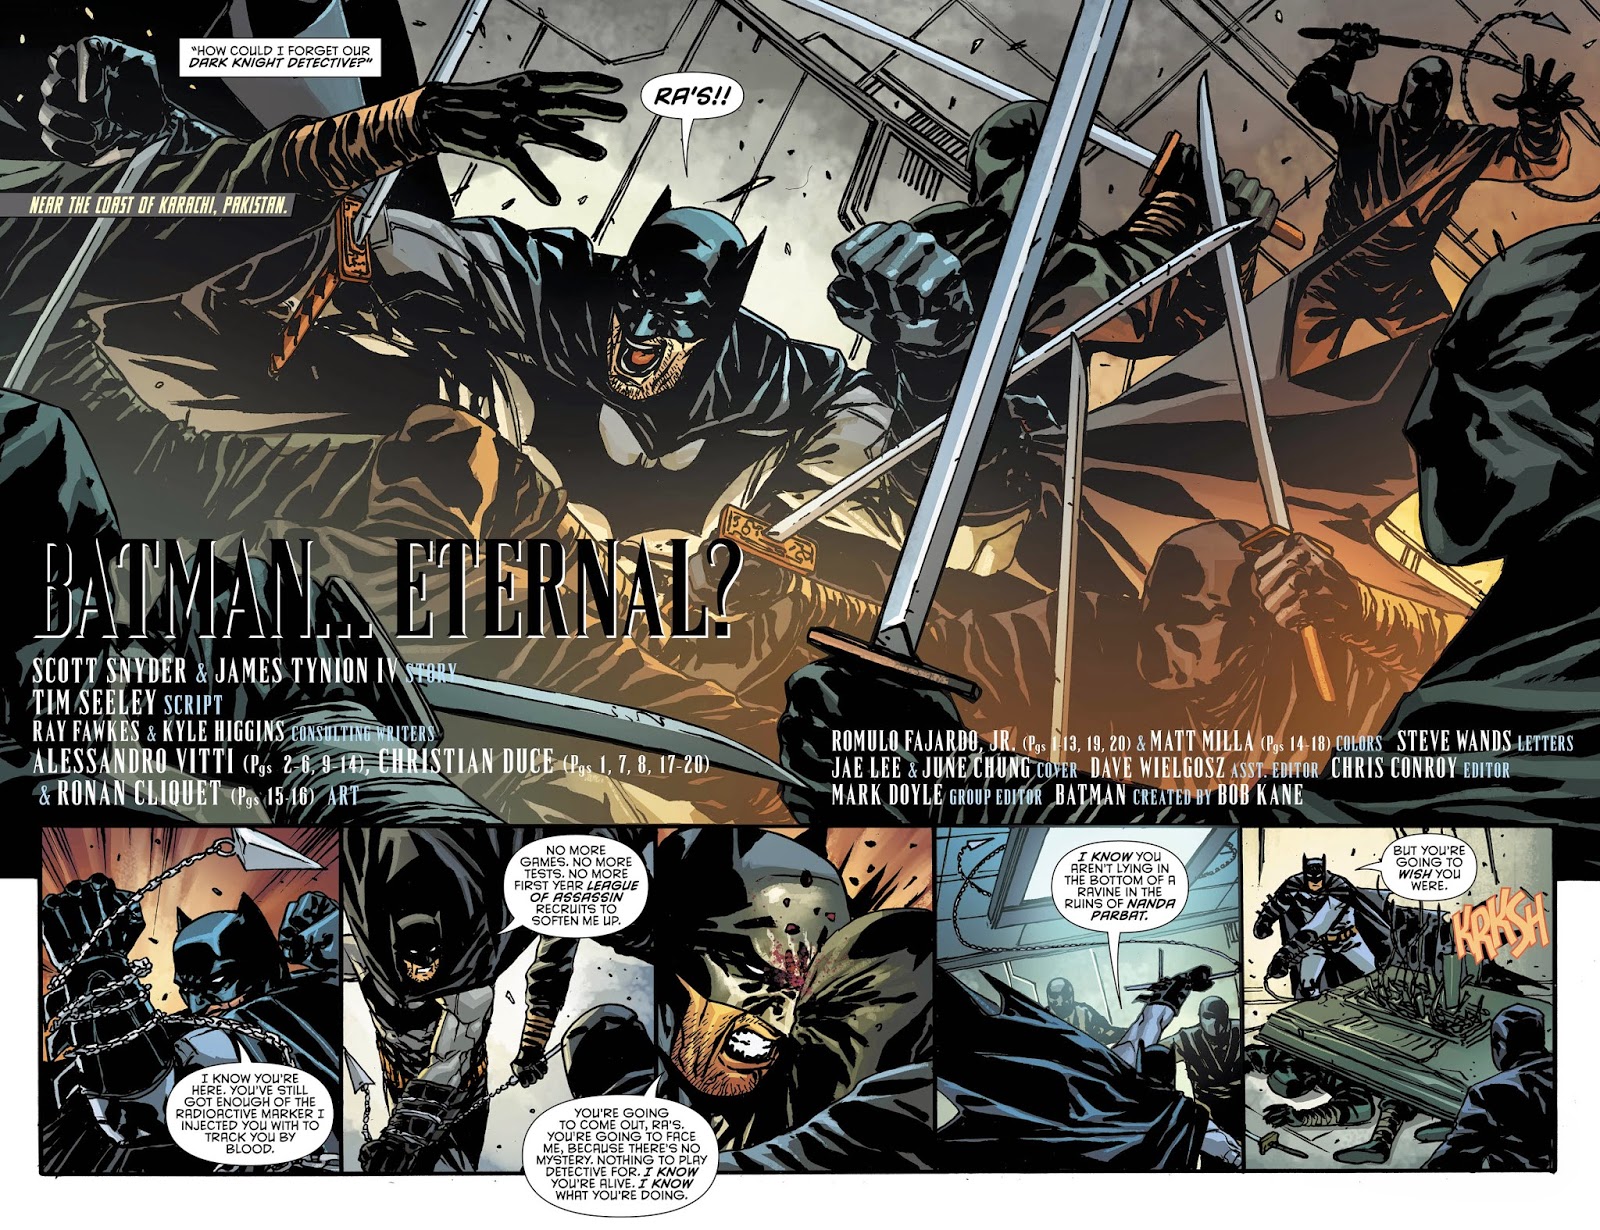 Манга ограниченный временем темный рыцарь 53. Бэтмен Скотт Снайдер хронология комиксов. Мистер Хиггинс комикс.